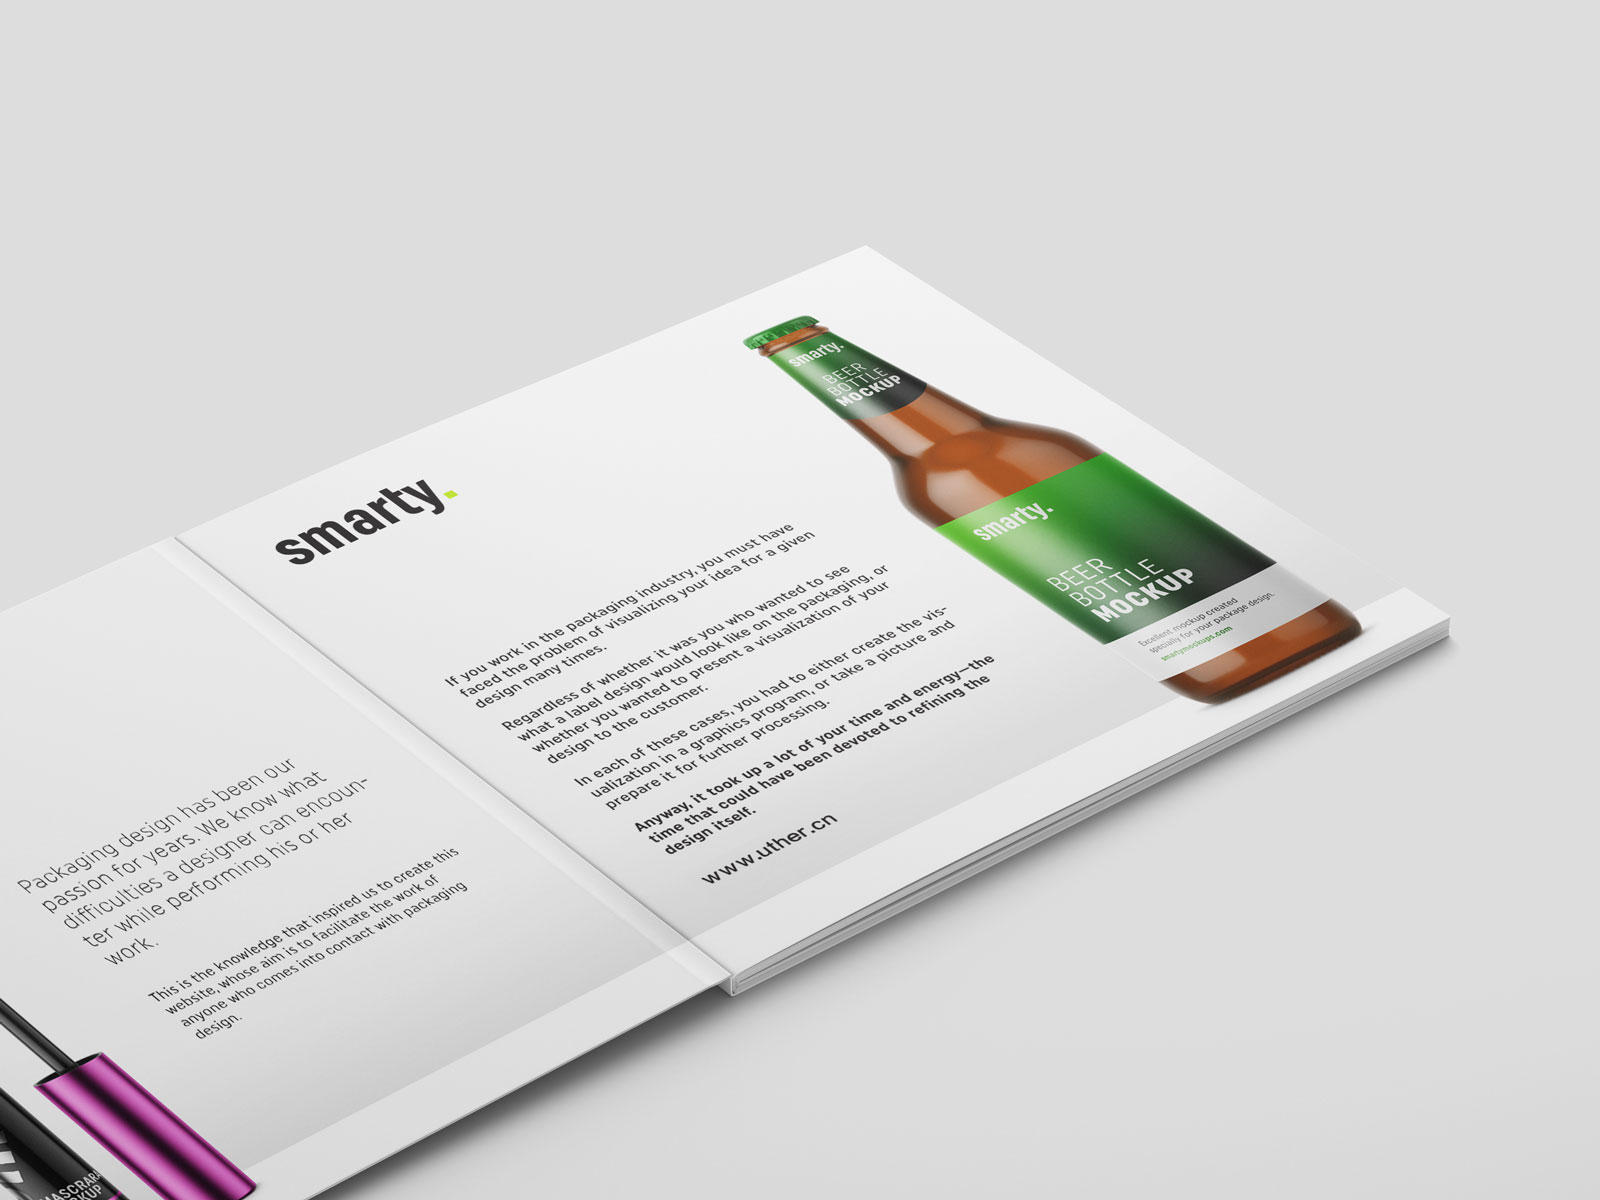 绿色大气正方形产品宣传册设计内页展示样机素材brochure mockup .psd素材